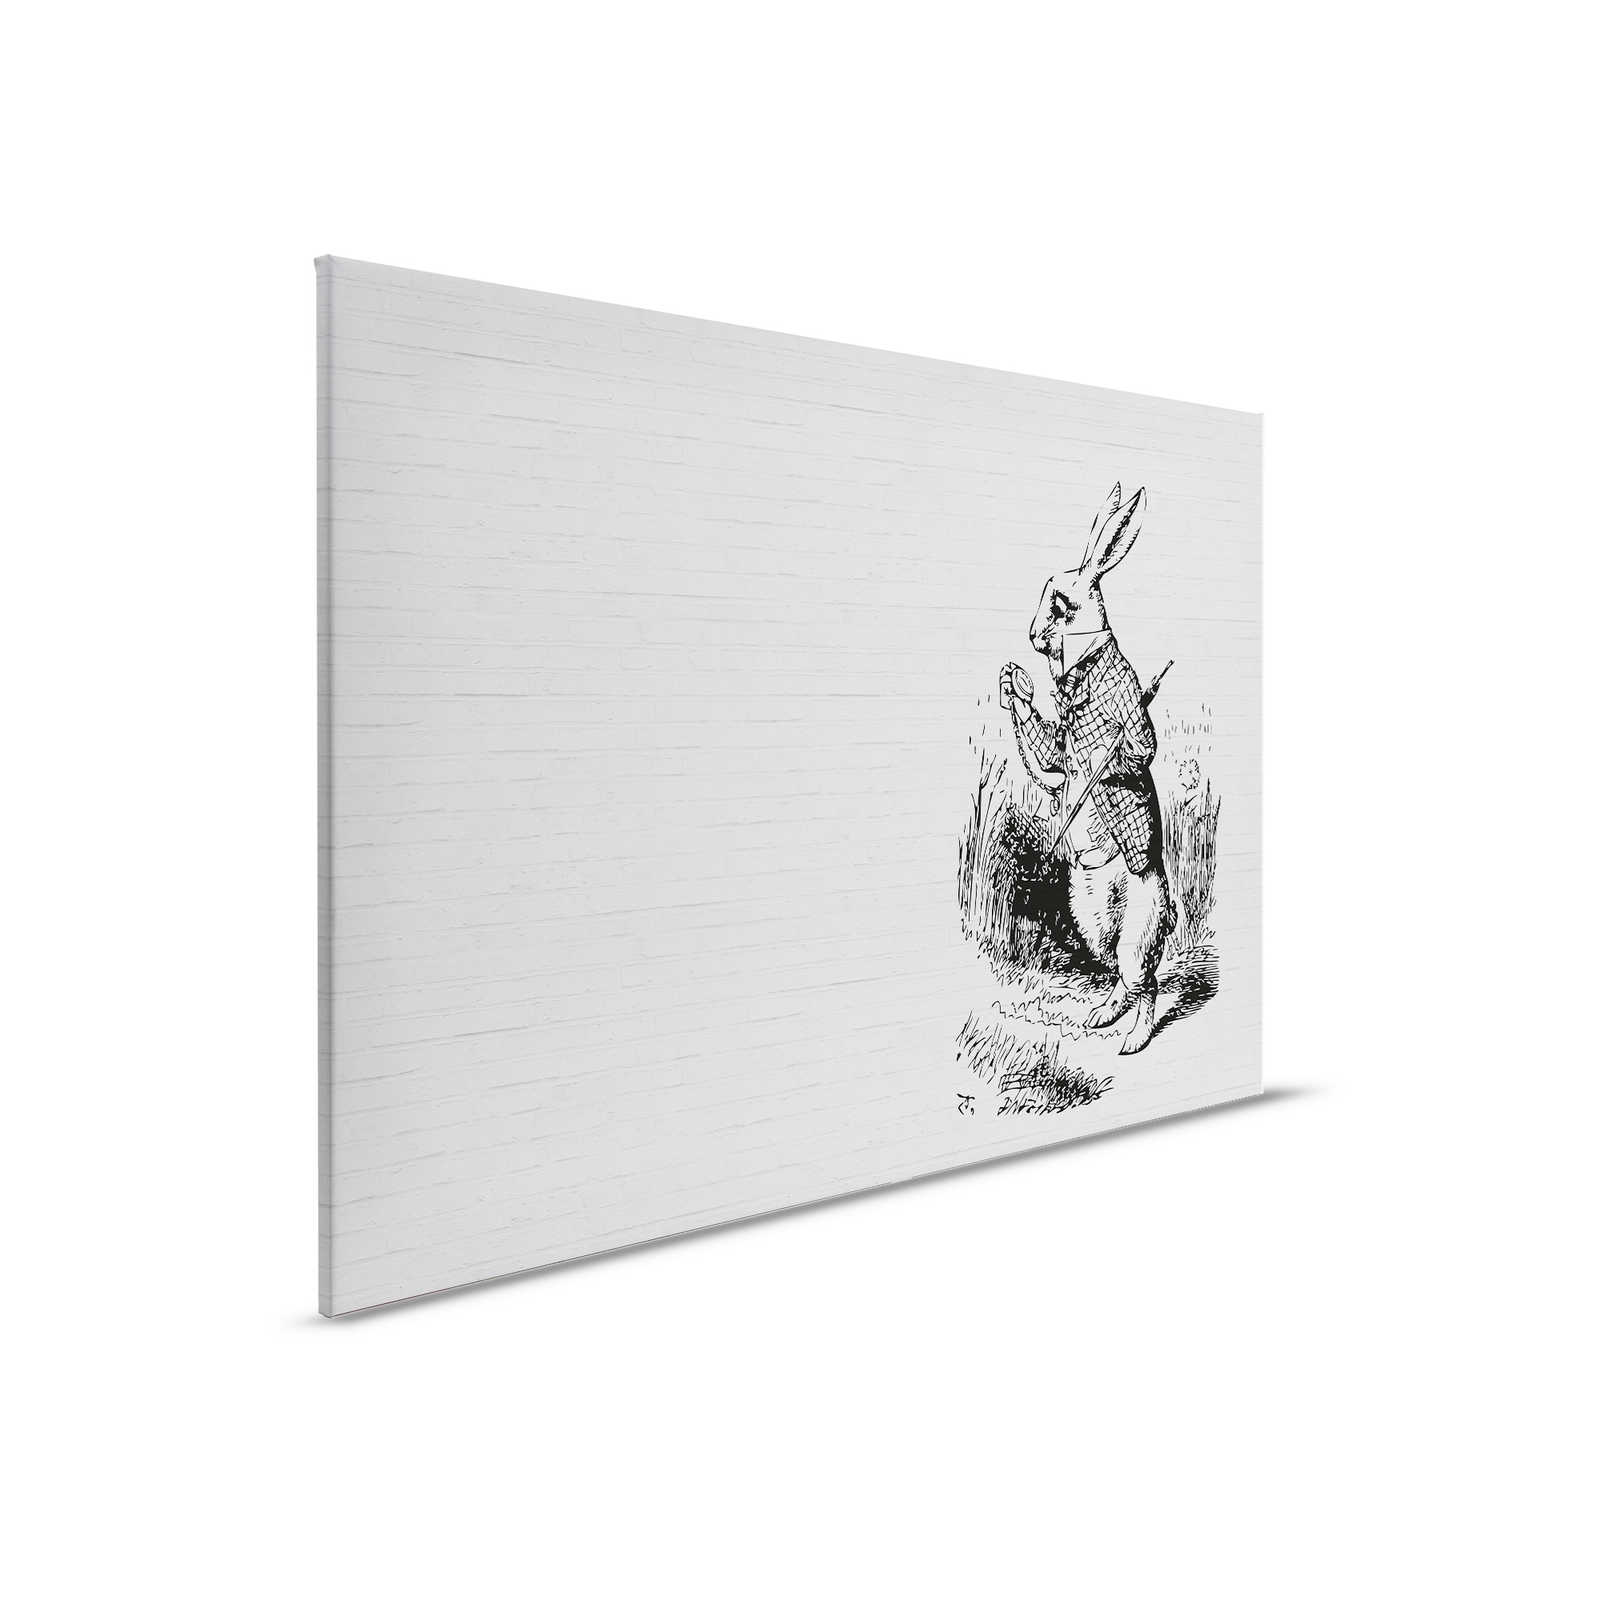 Zwart-wit canvas schilderij Stenen blik & konijn met wandelstok - 0.90 m x 0.60 m
